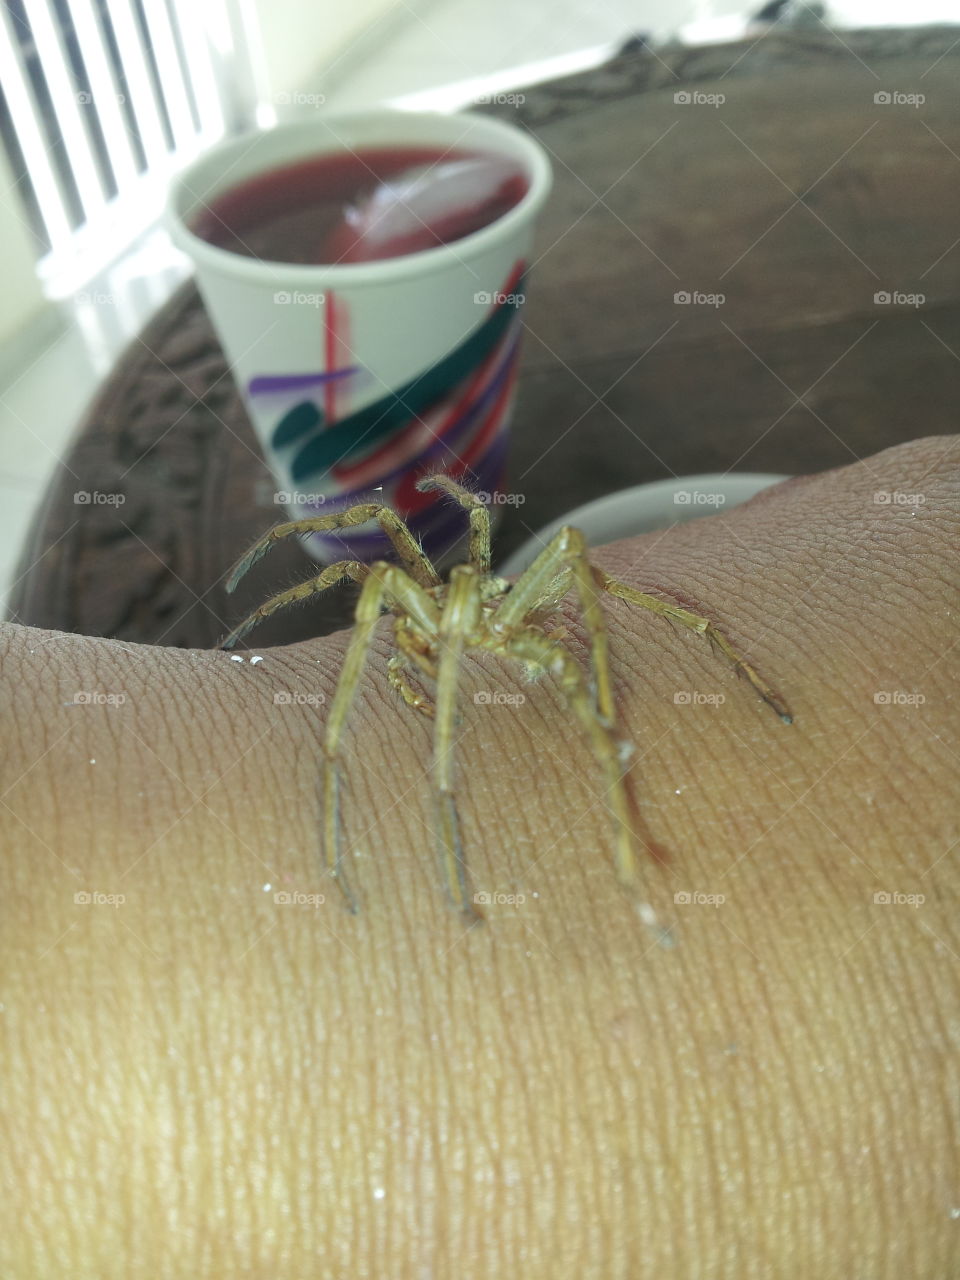 spider on my arm